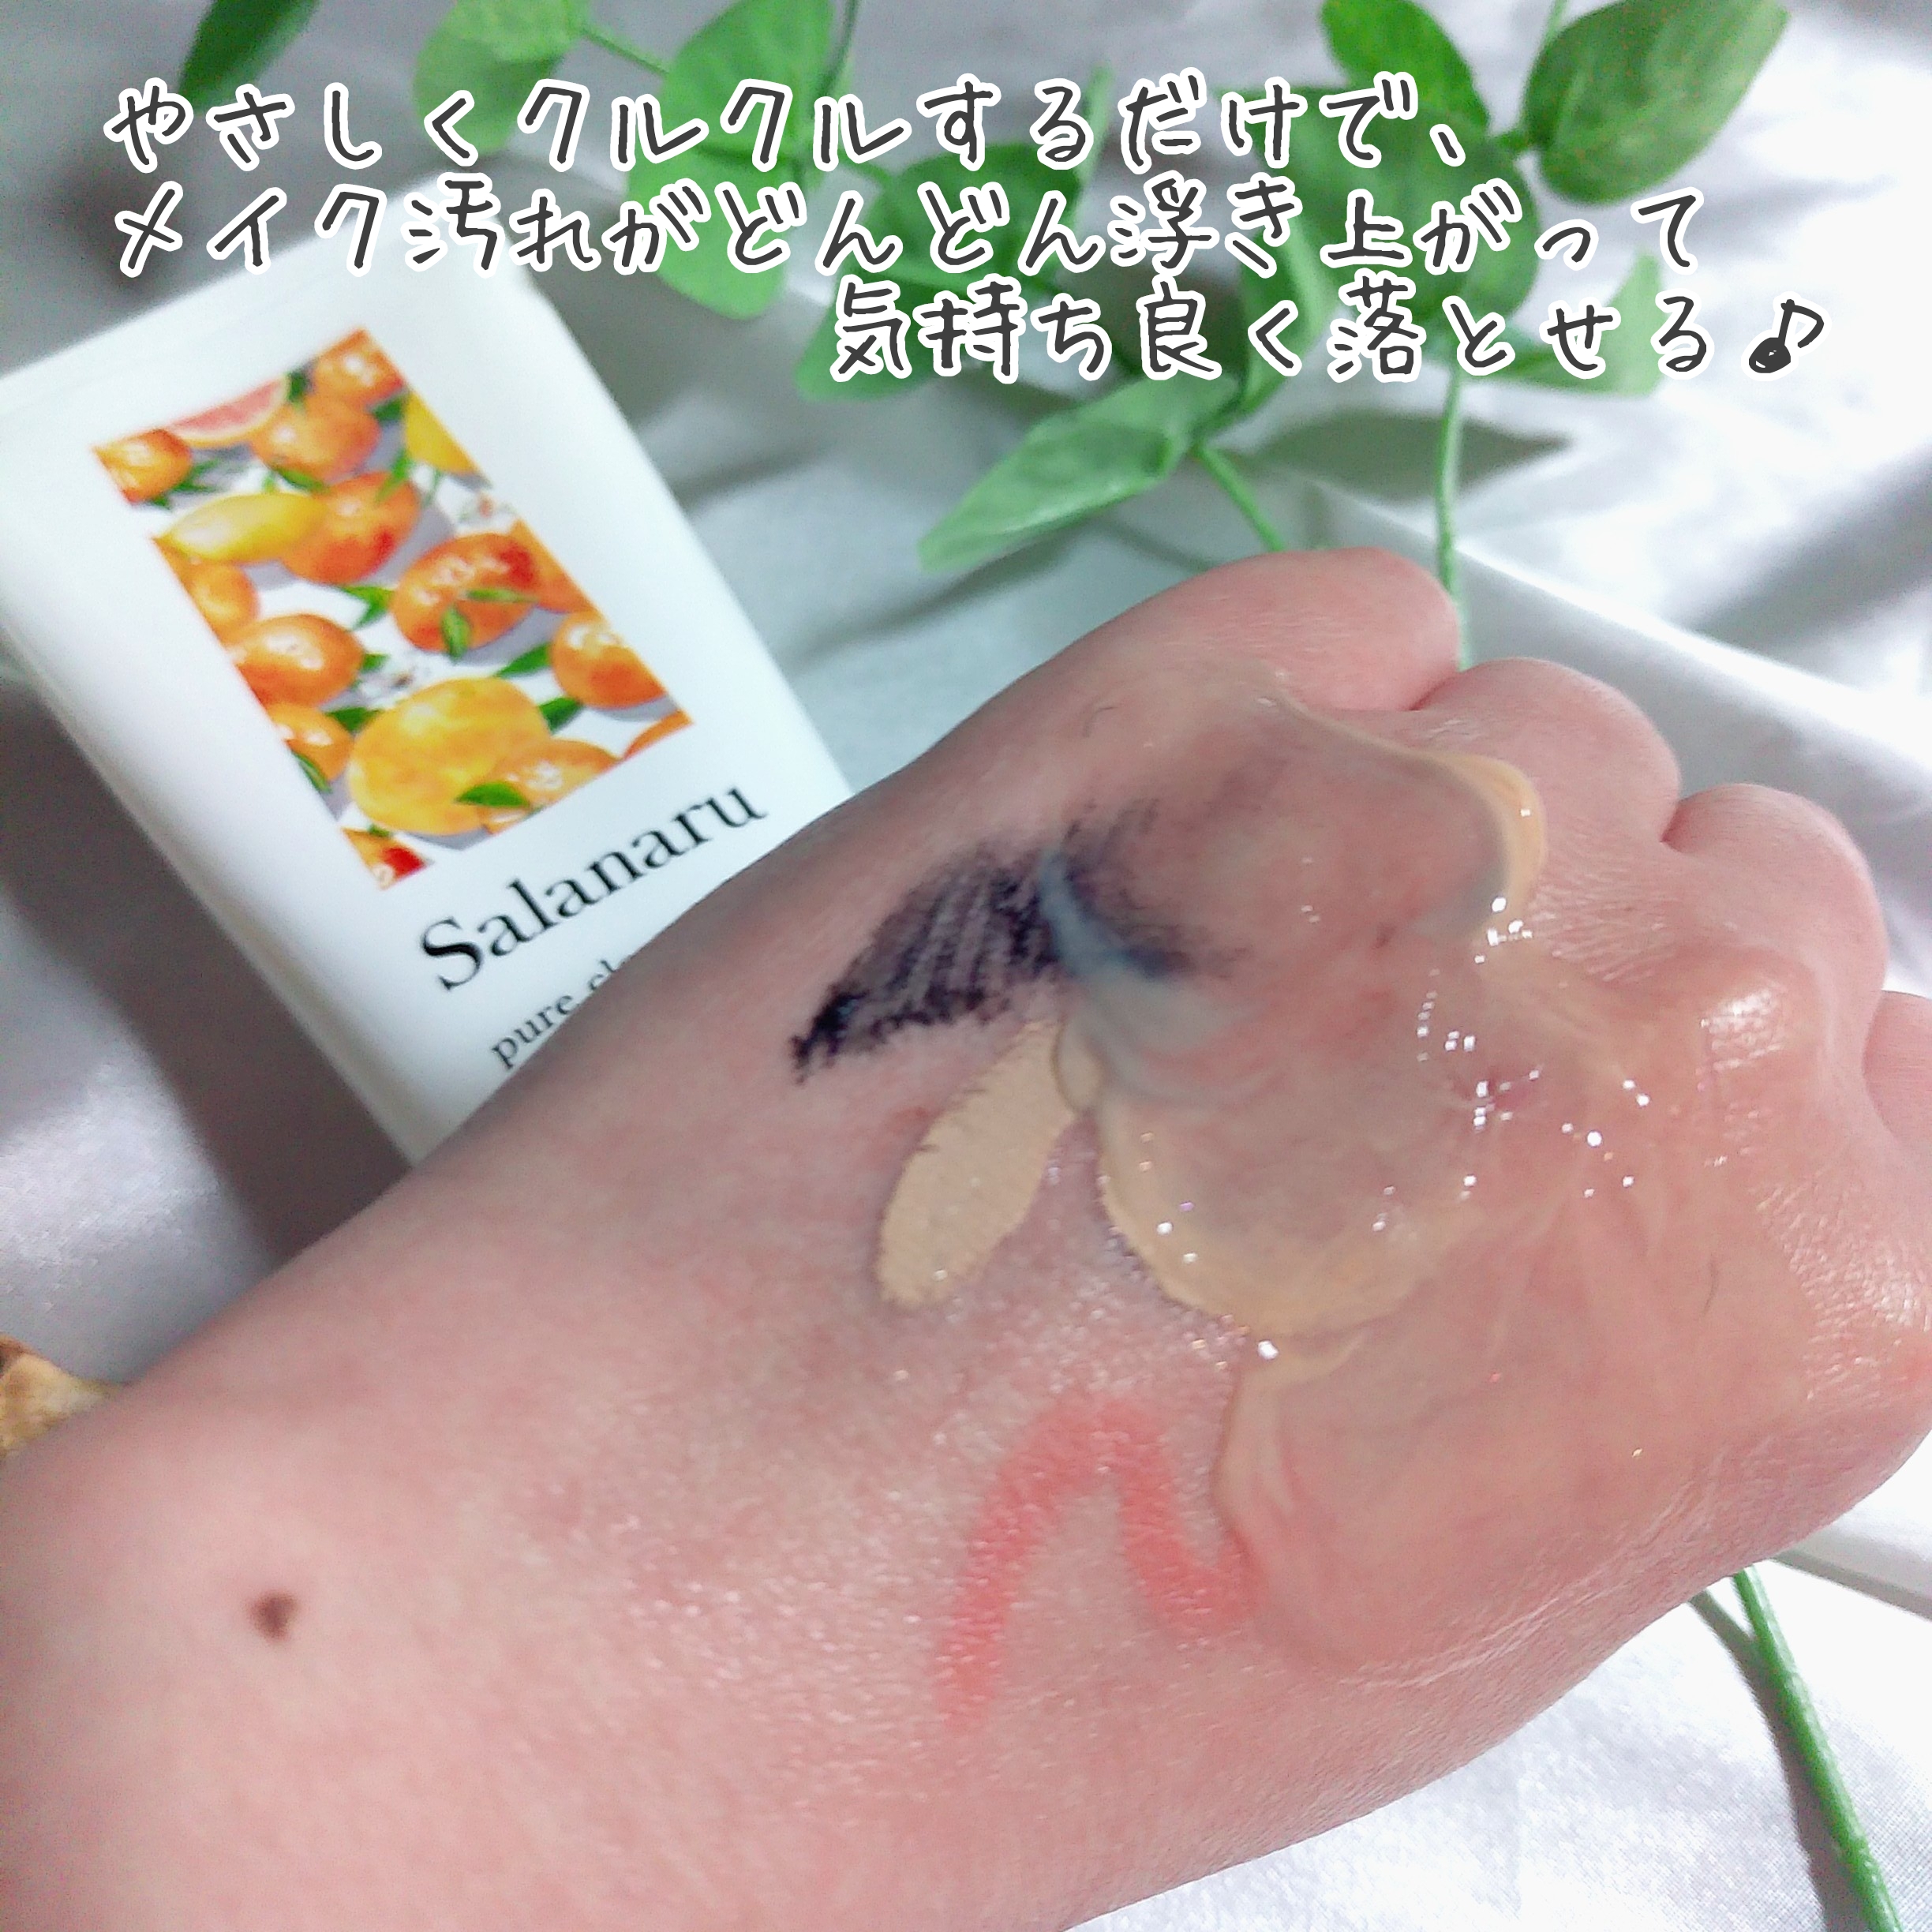 Salanaru(サラナル) ピュアクレンジングジェル クリアの良い点・メリットに関するまるもふさんの口コミ画像3